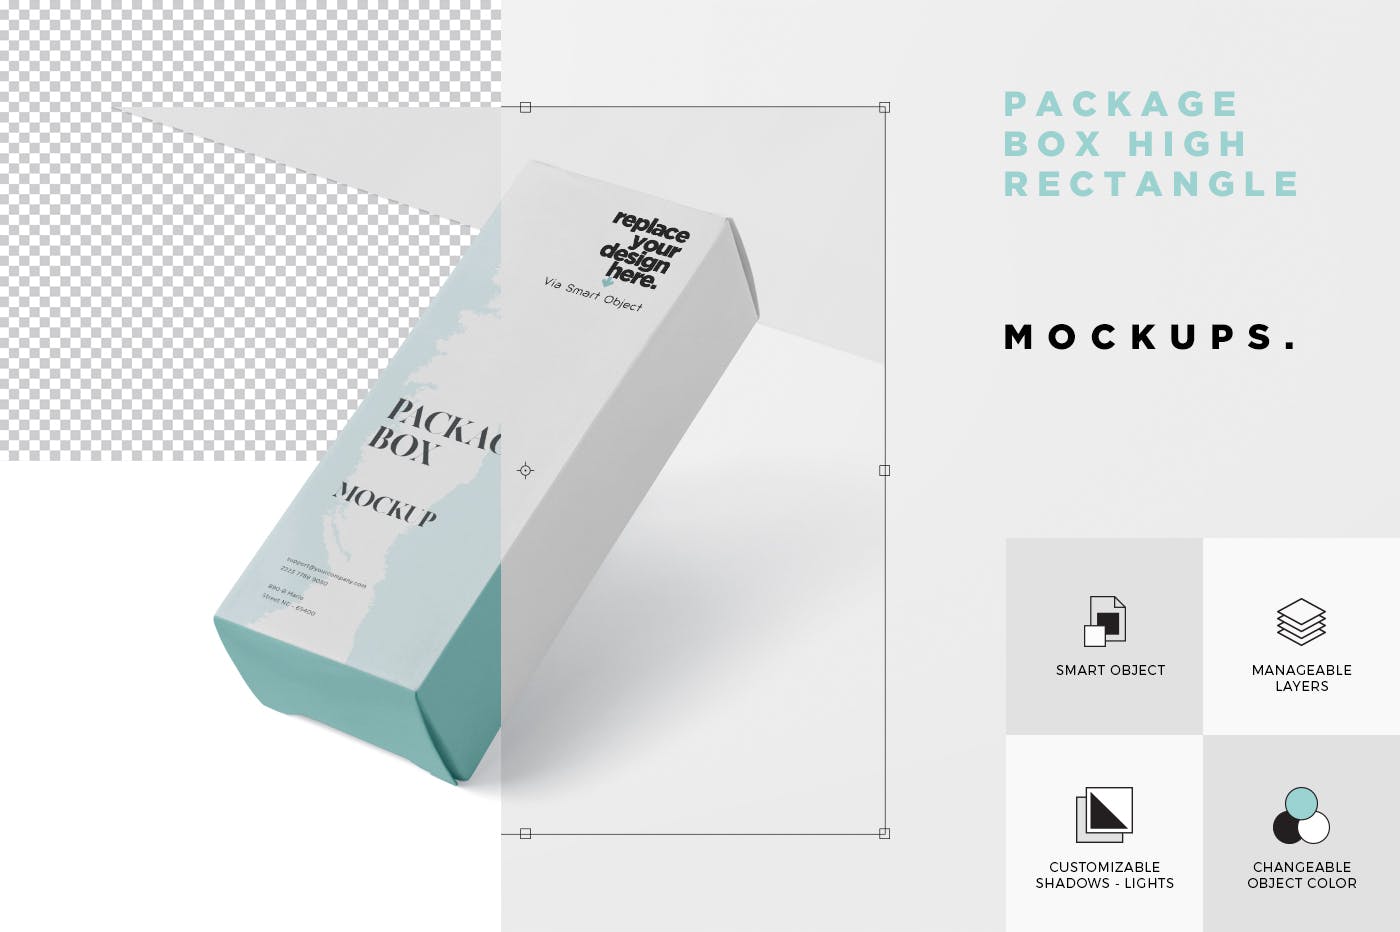 简约风多用途产品包装纸盒设计效果图普贤居精选 Package Box Mock-Up – High Rectangle Shape插图(5)